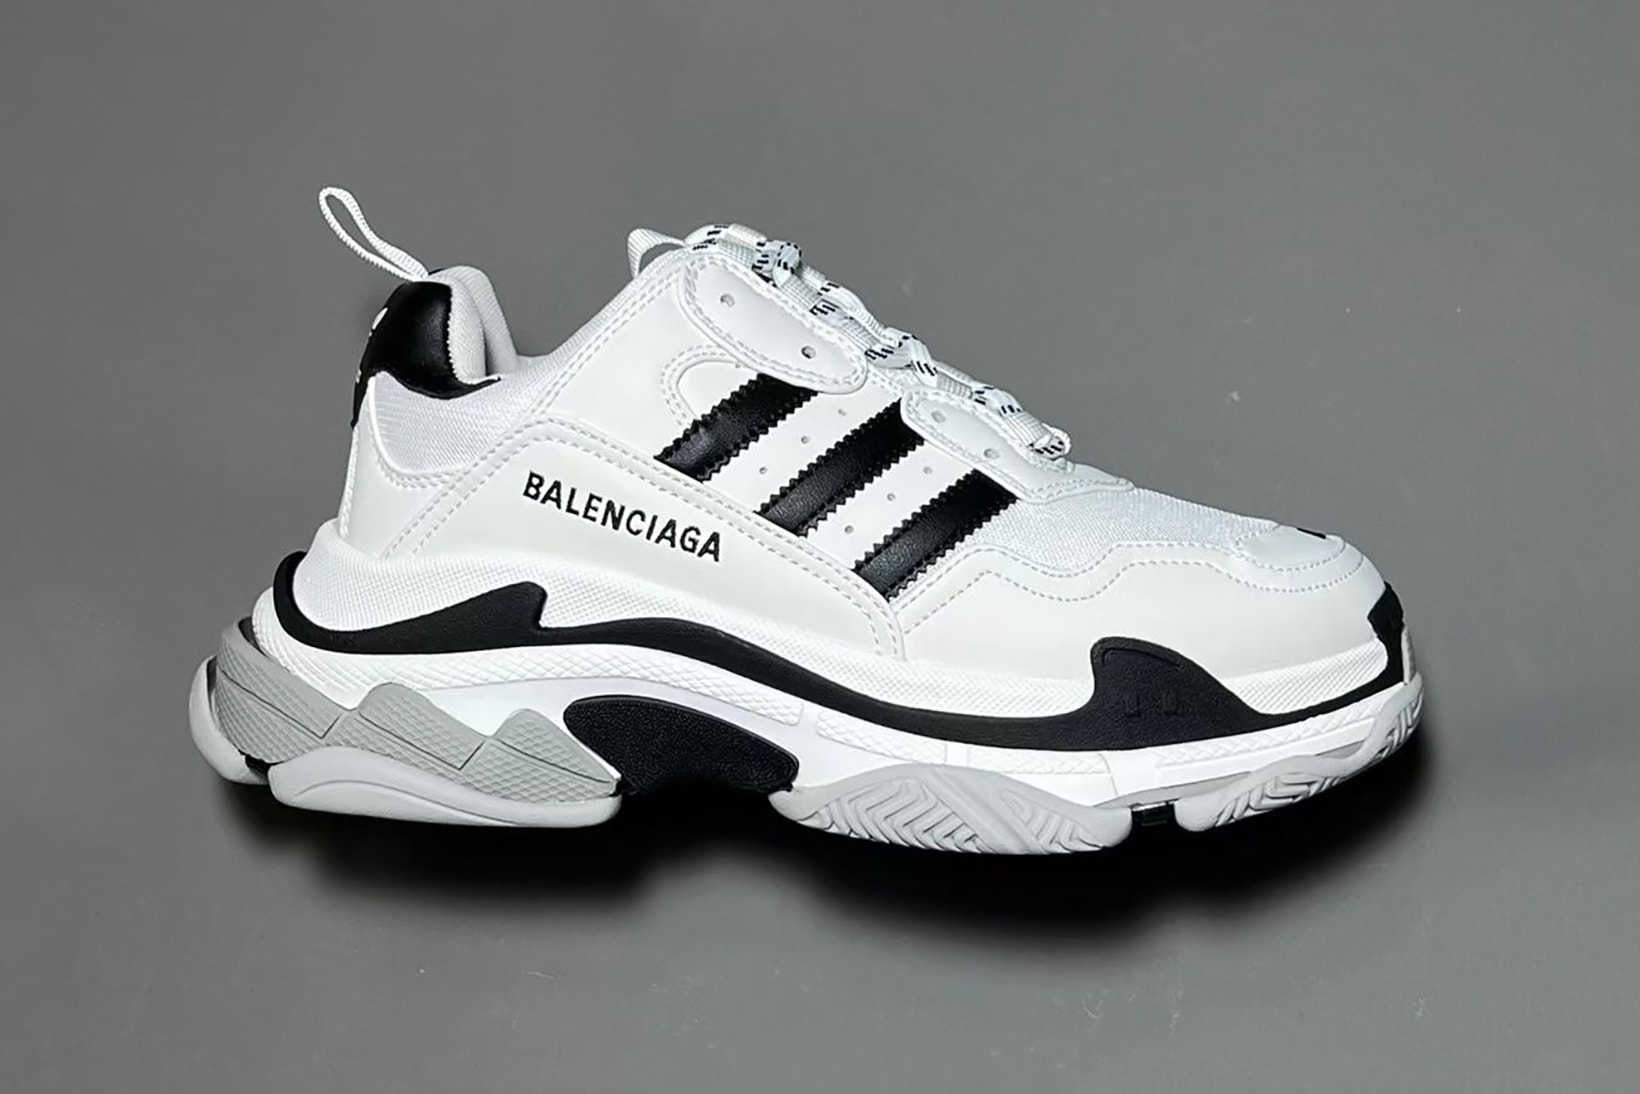 adidas x Balenciaga Triple-S Collab Release